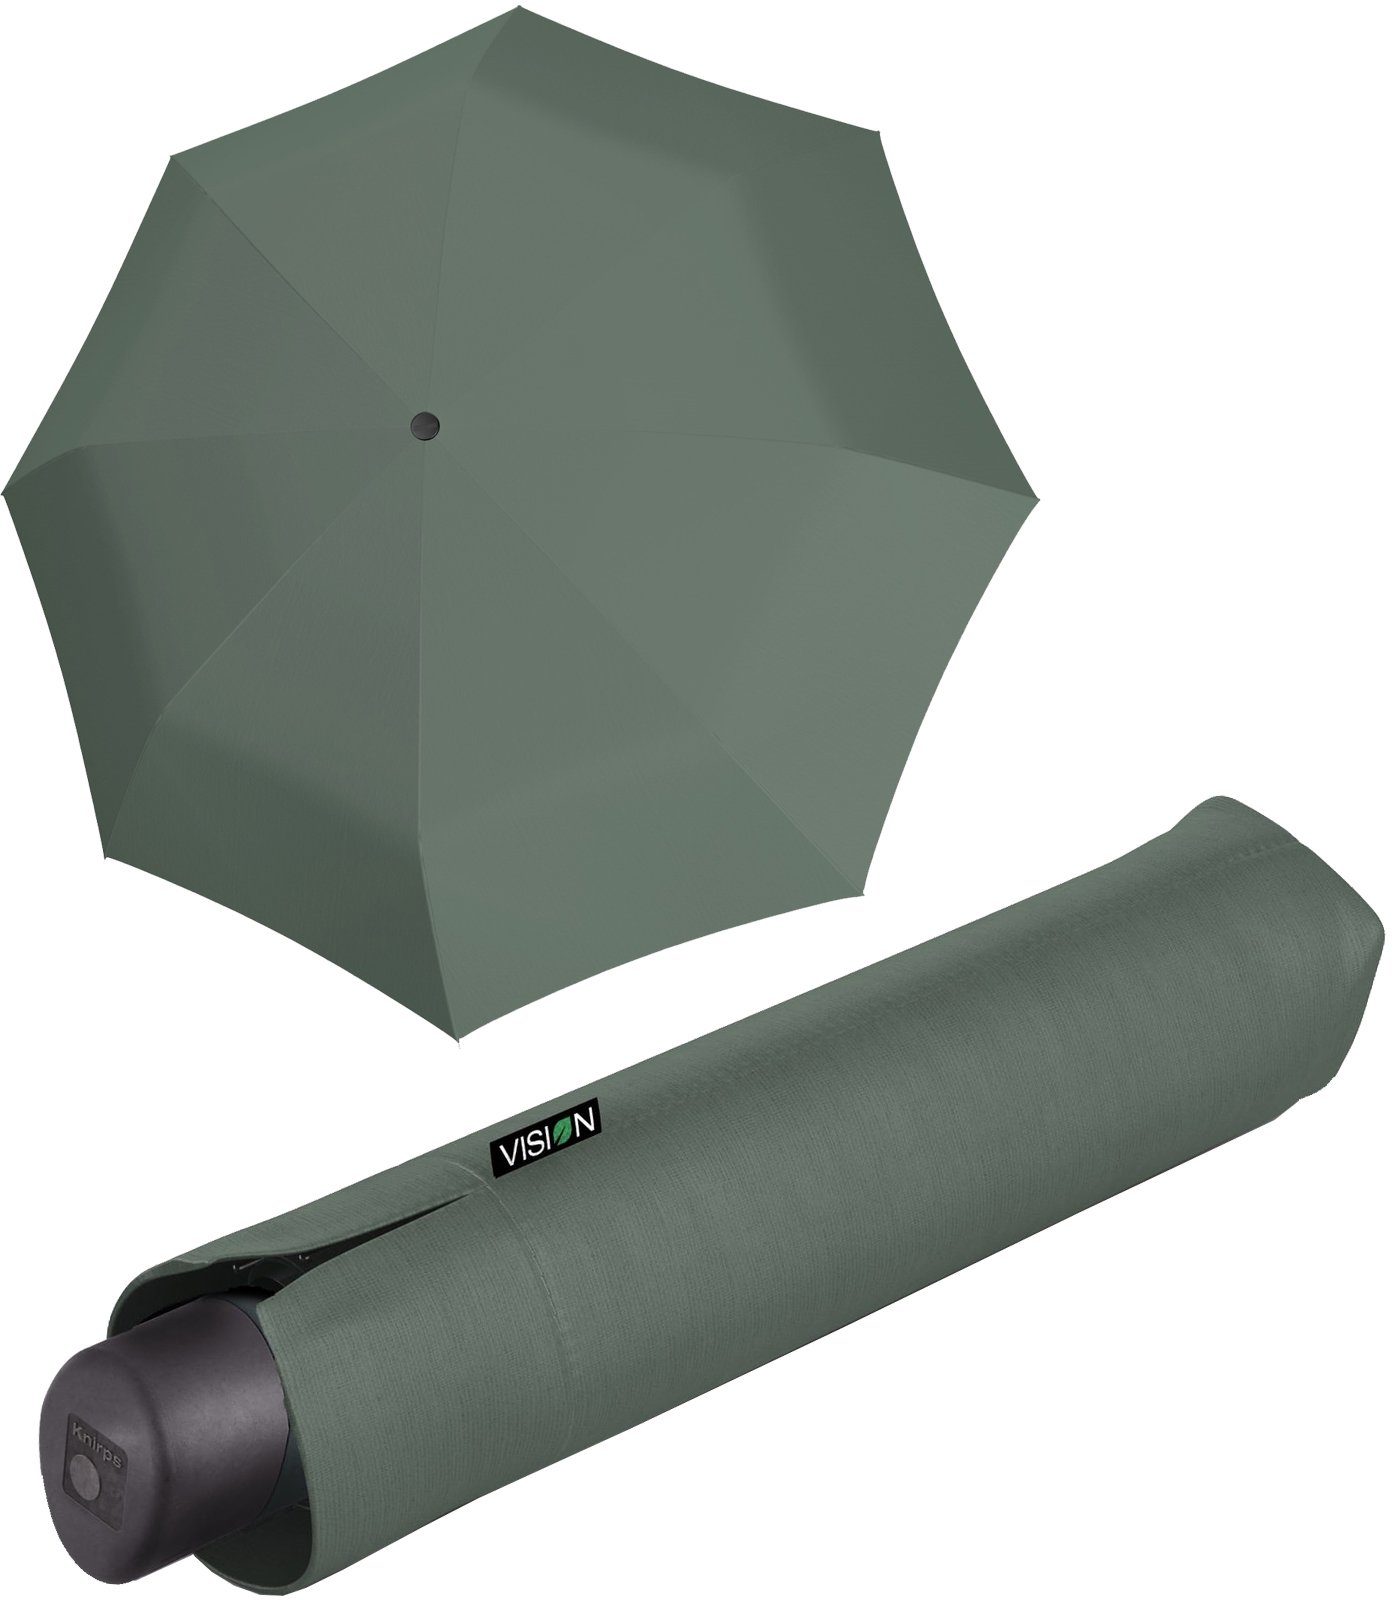 Knirps® Taschenregenschirm Vision Manual nachhaltiger grün plant recyceltes - PFC-frei PET, Damen-Regenschirm, beschichtet 